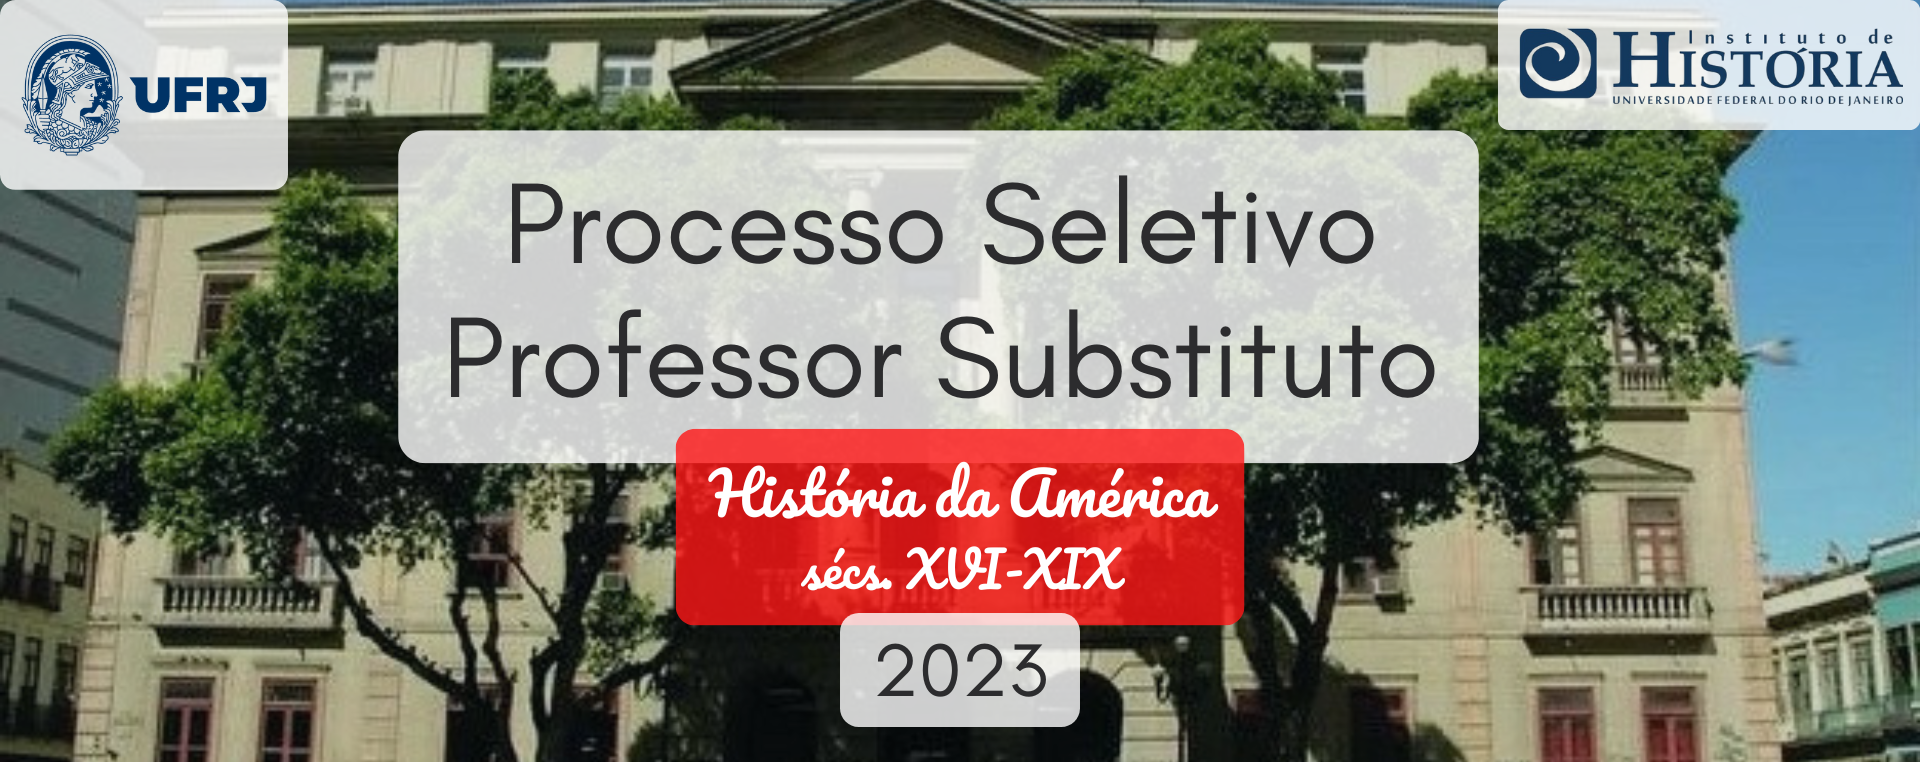 Processo-Seletivo-Professor-Substituto-banner